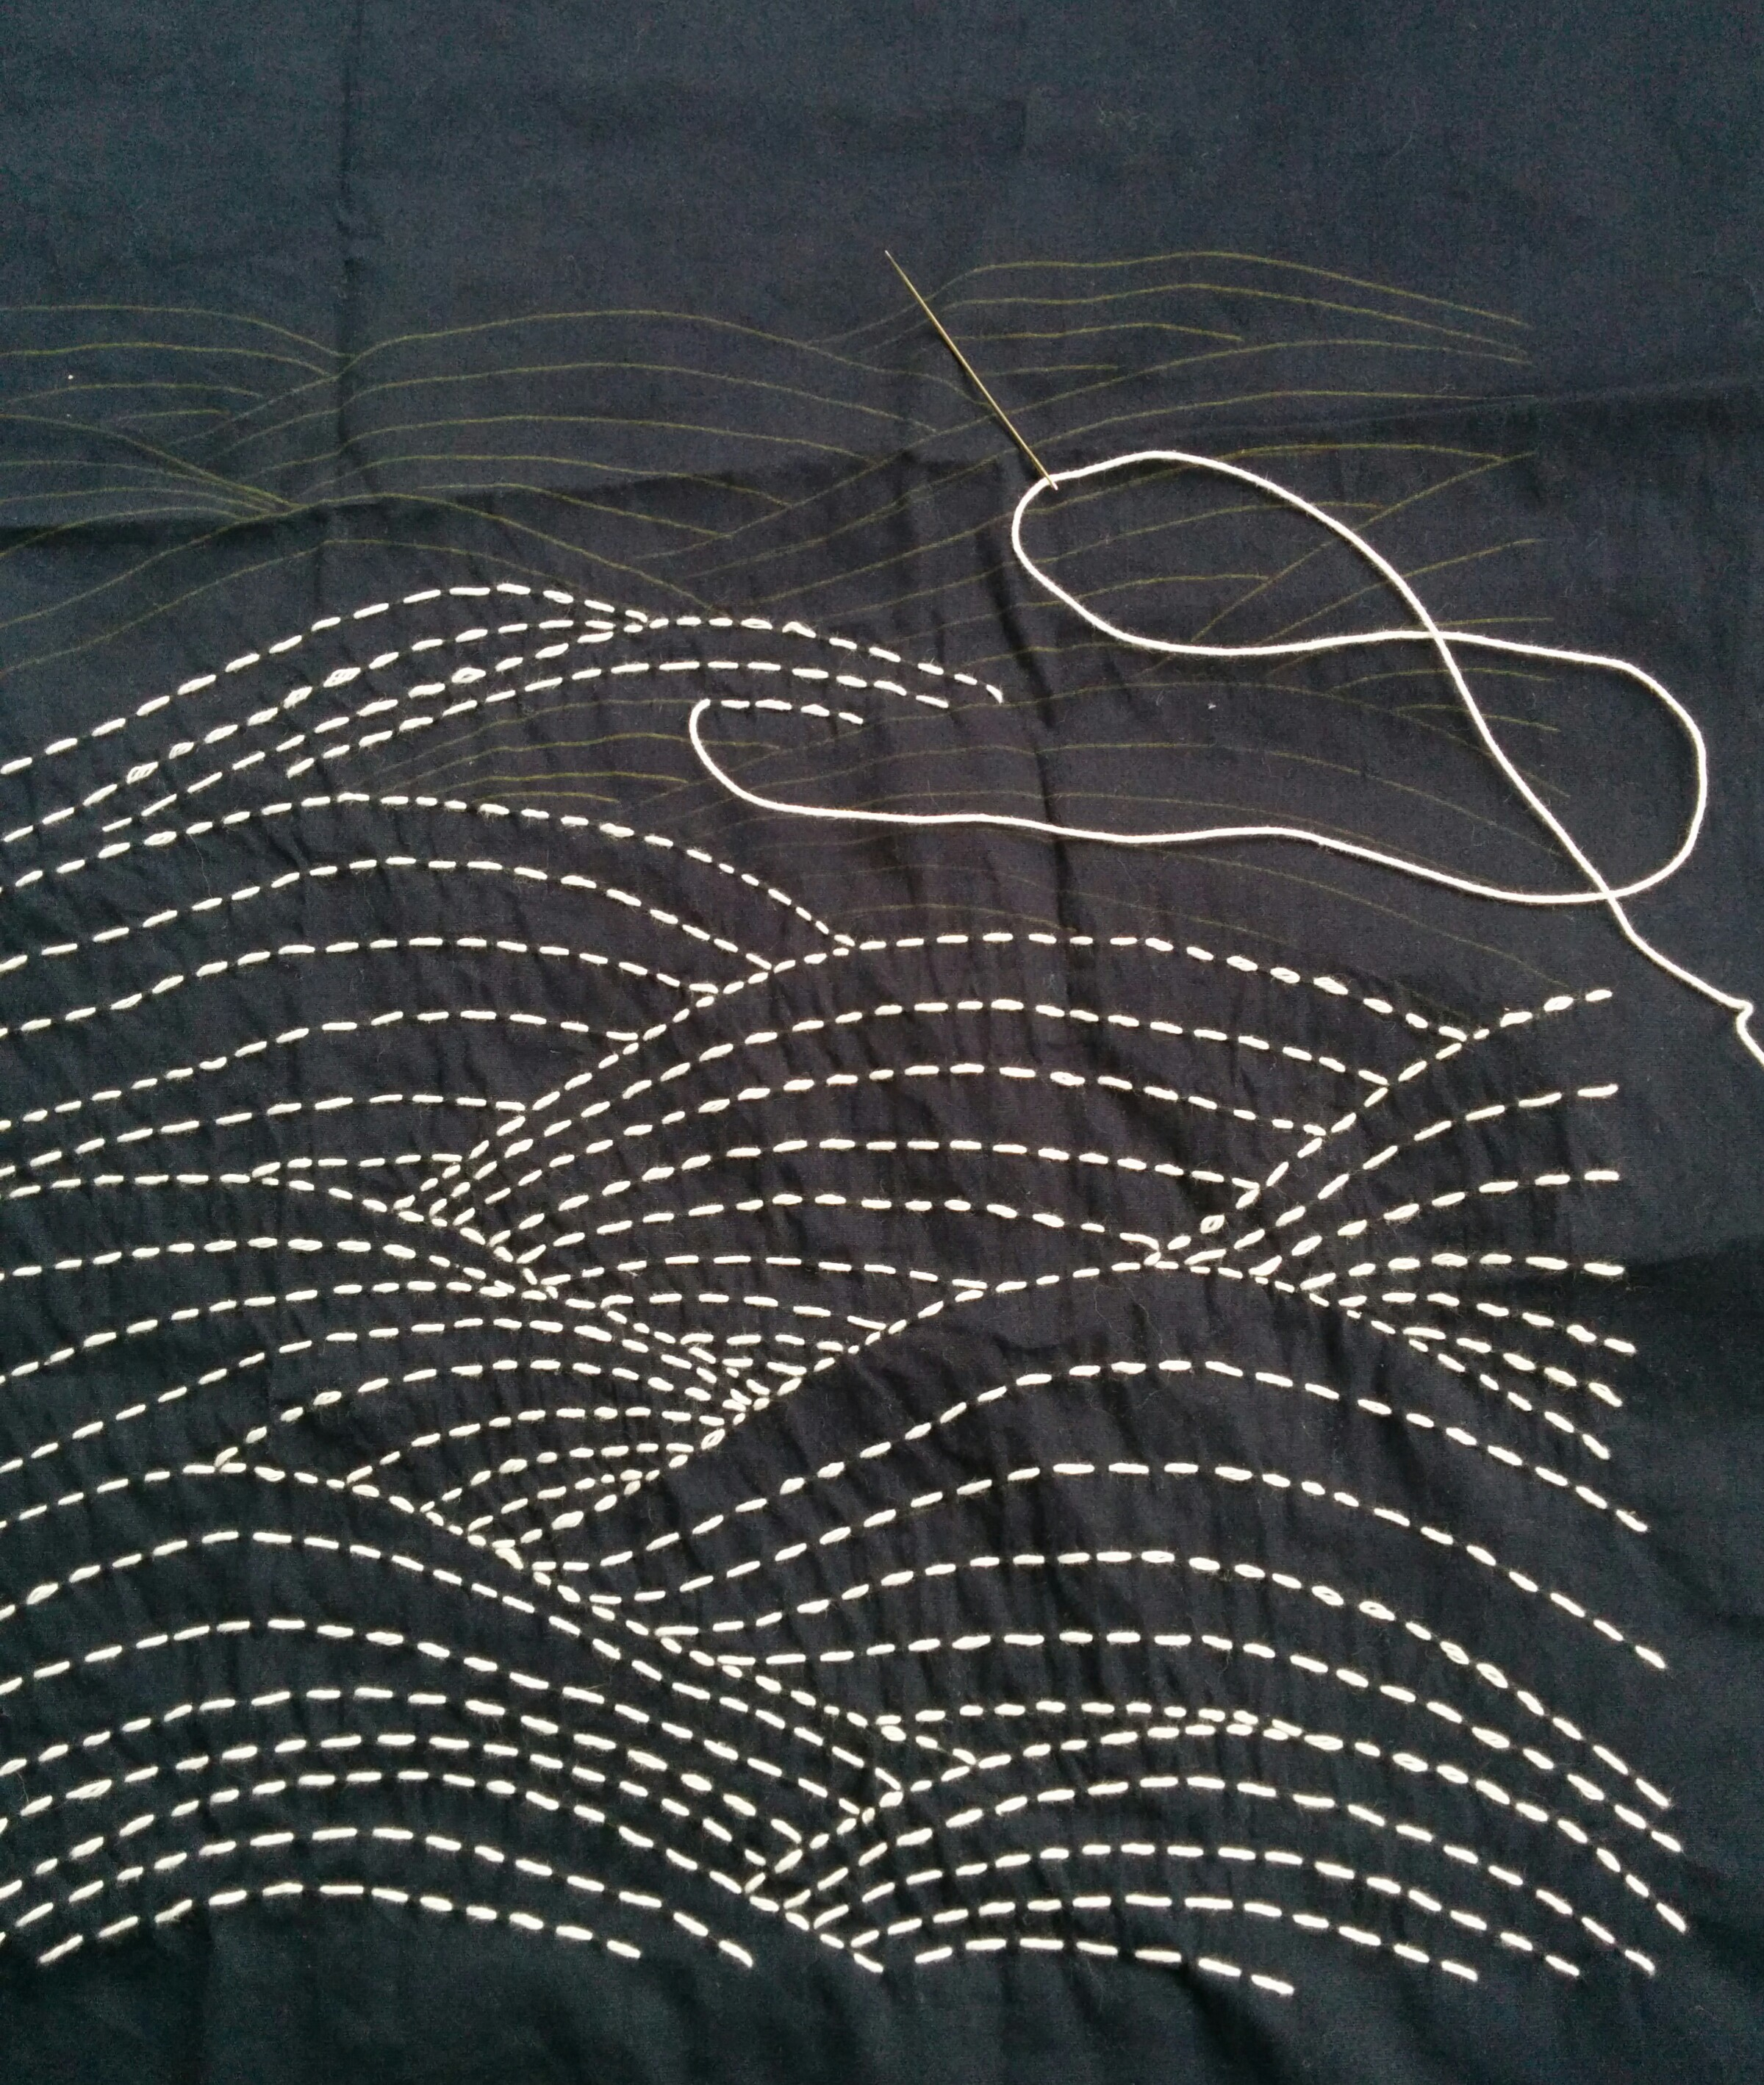 Sashiko Embroidery Patterns Fully Booked Japanese Sashiko Embroidery Workshop Sunday August 25th 1000 1600